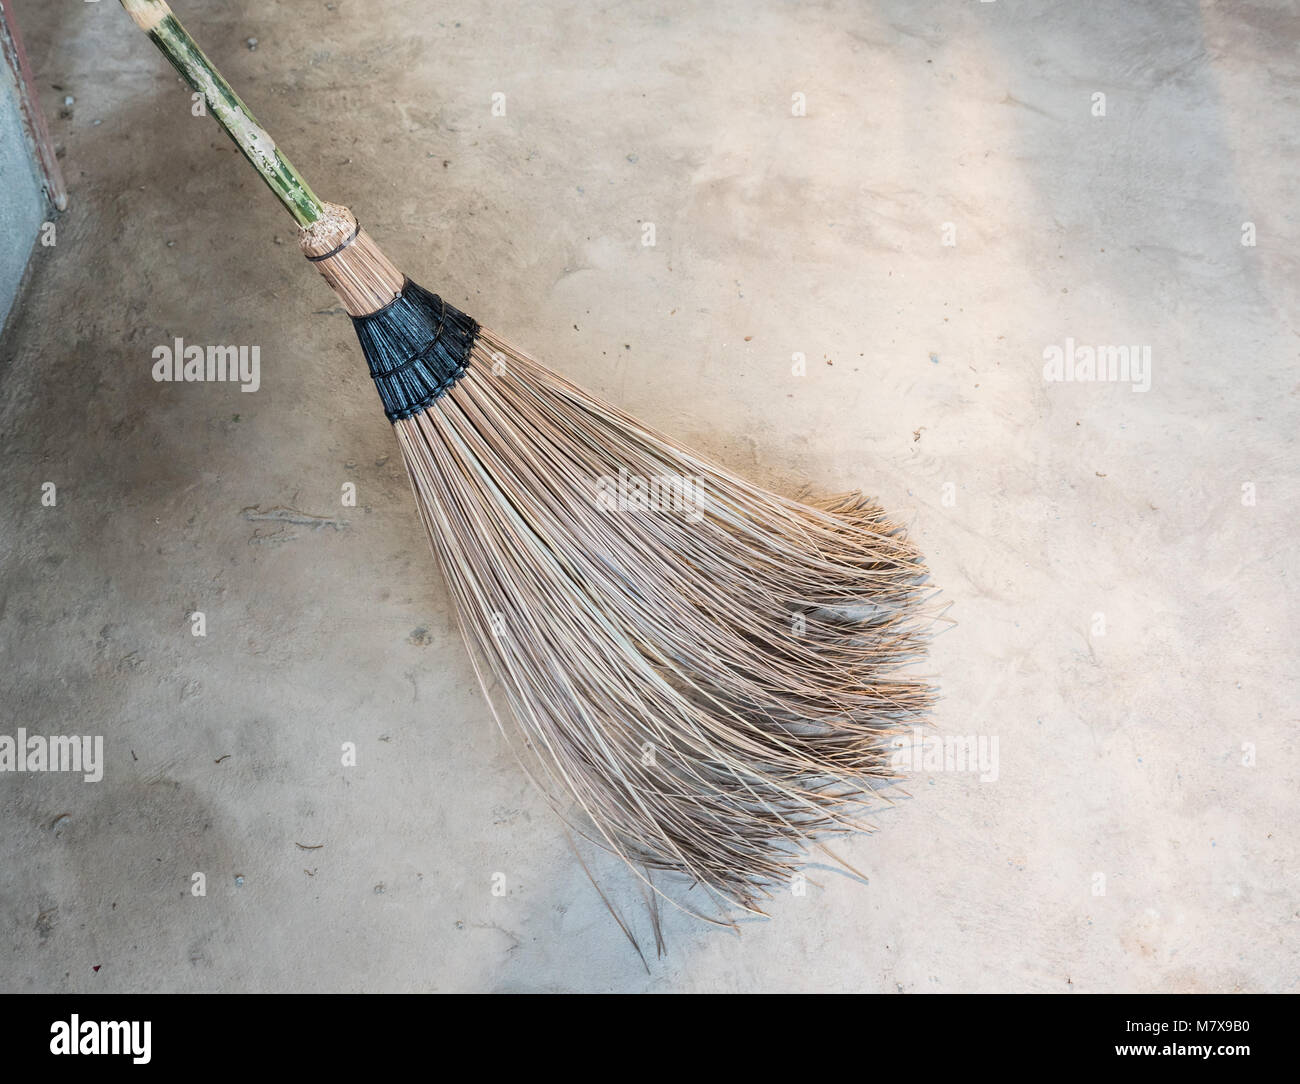 Clouseup du coconut leaf broom stick pour balayer dans la construction maison. Banque D'Images